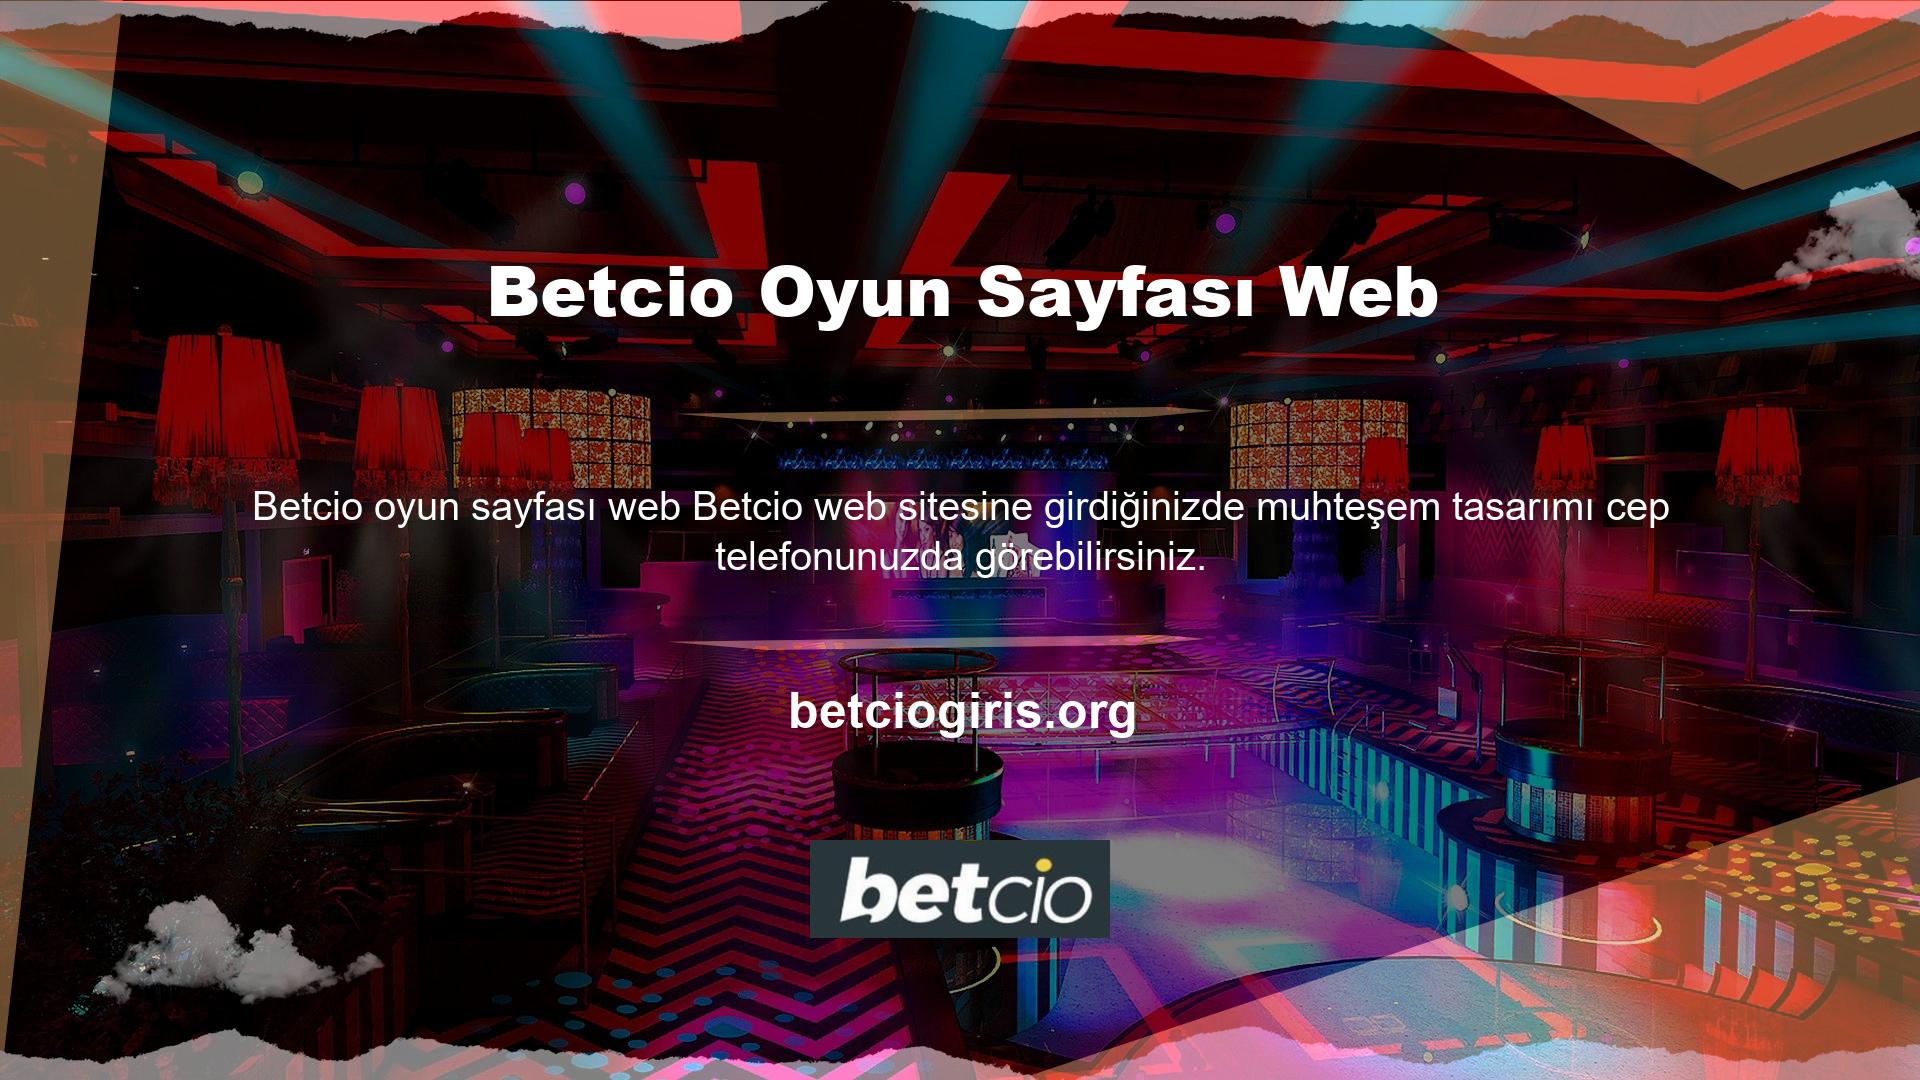 Betcio sitesi, bahisçilerin sadece bilgisayarlarından değil cep telefonlarından da bahis oynamalarına olanak tanıyan bir uygulama geliştirerek bu fırsatı sunmaktadır